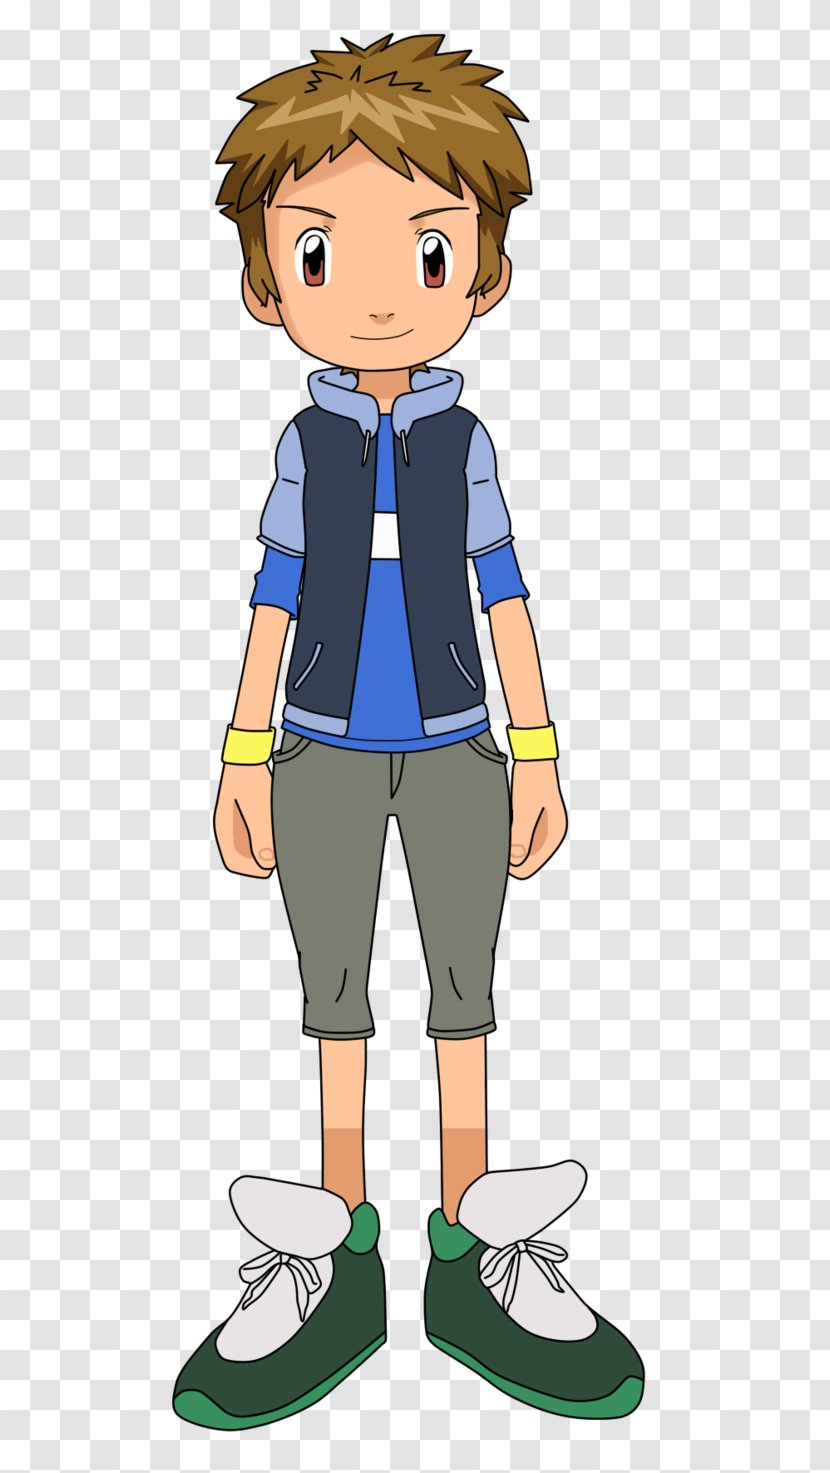 Takato Matsuki Guilmon Takuya Kanbara Digimon Adventure Tri. - Clothing Transparent PNG